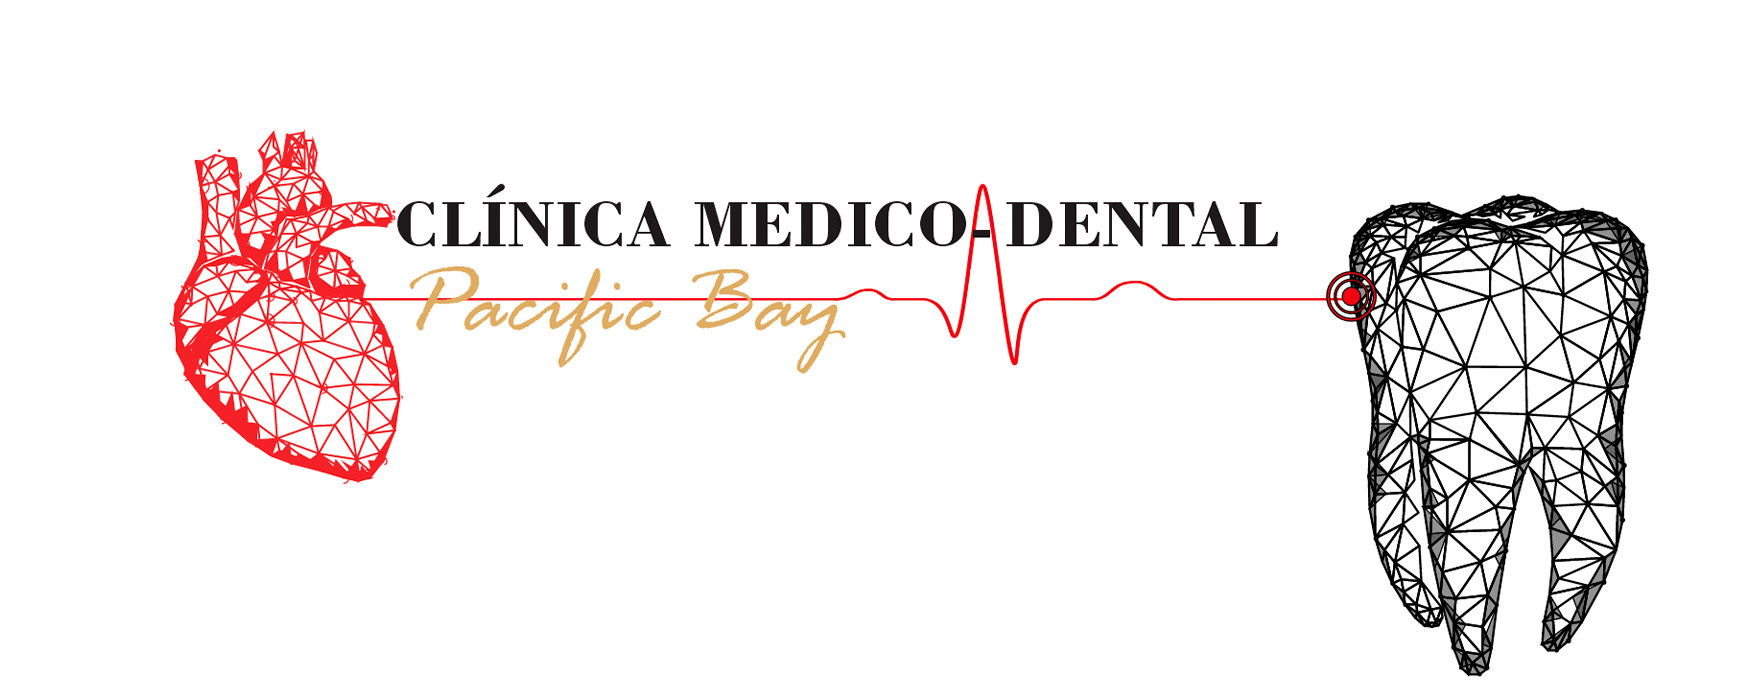 Clínica Medico Dental Pacific Bay